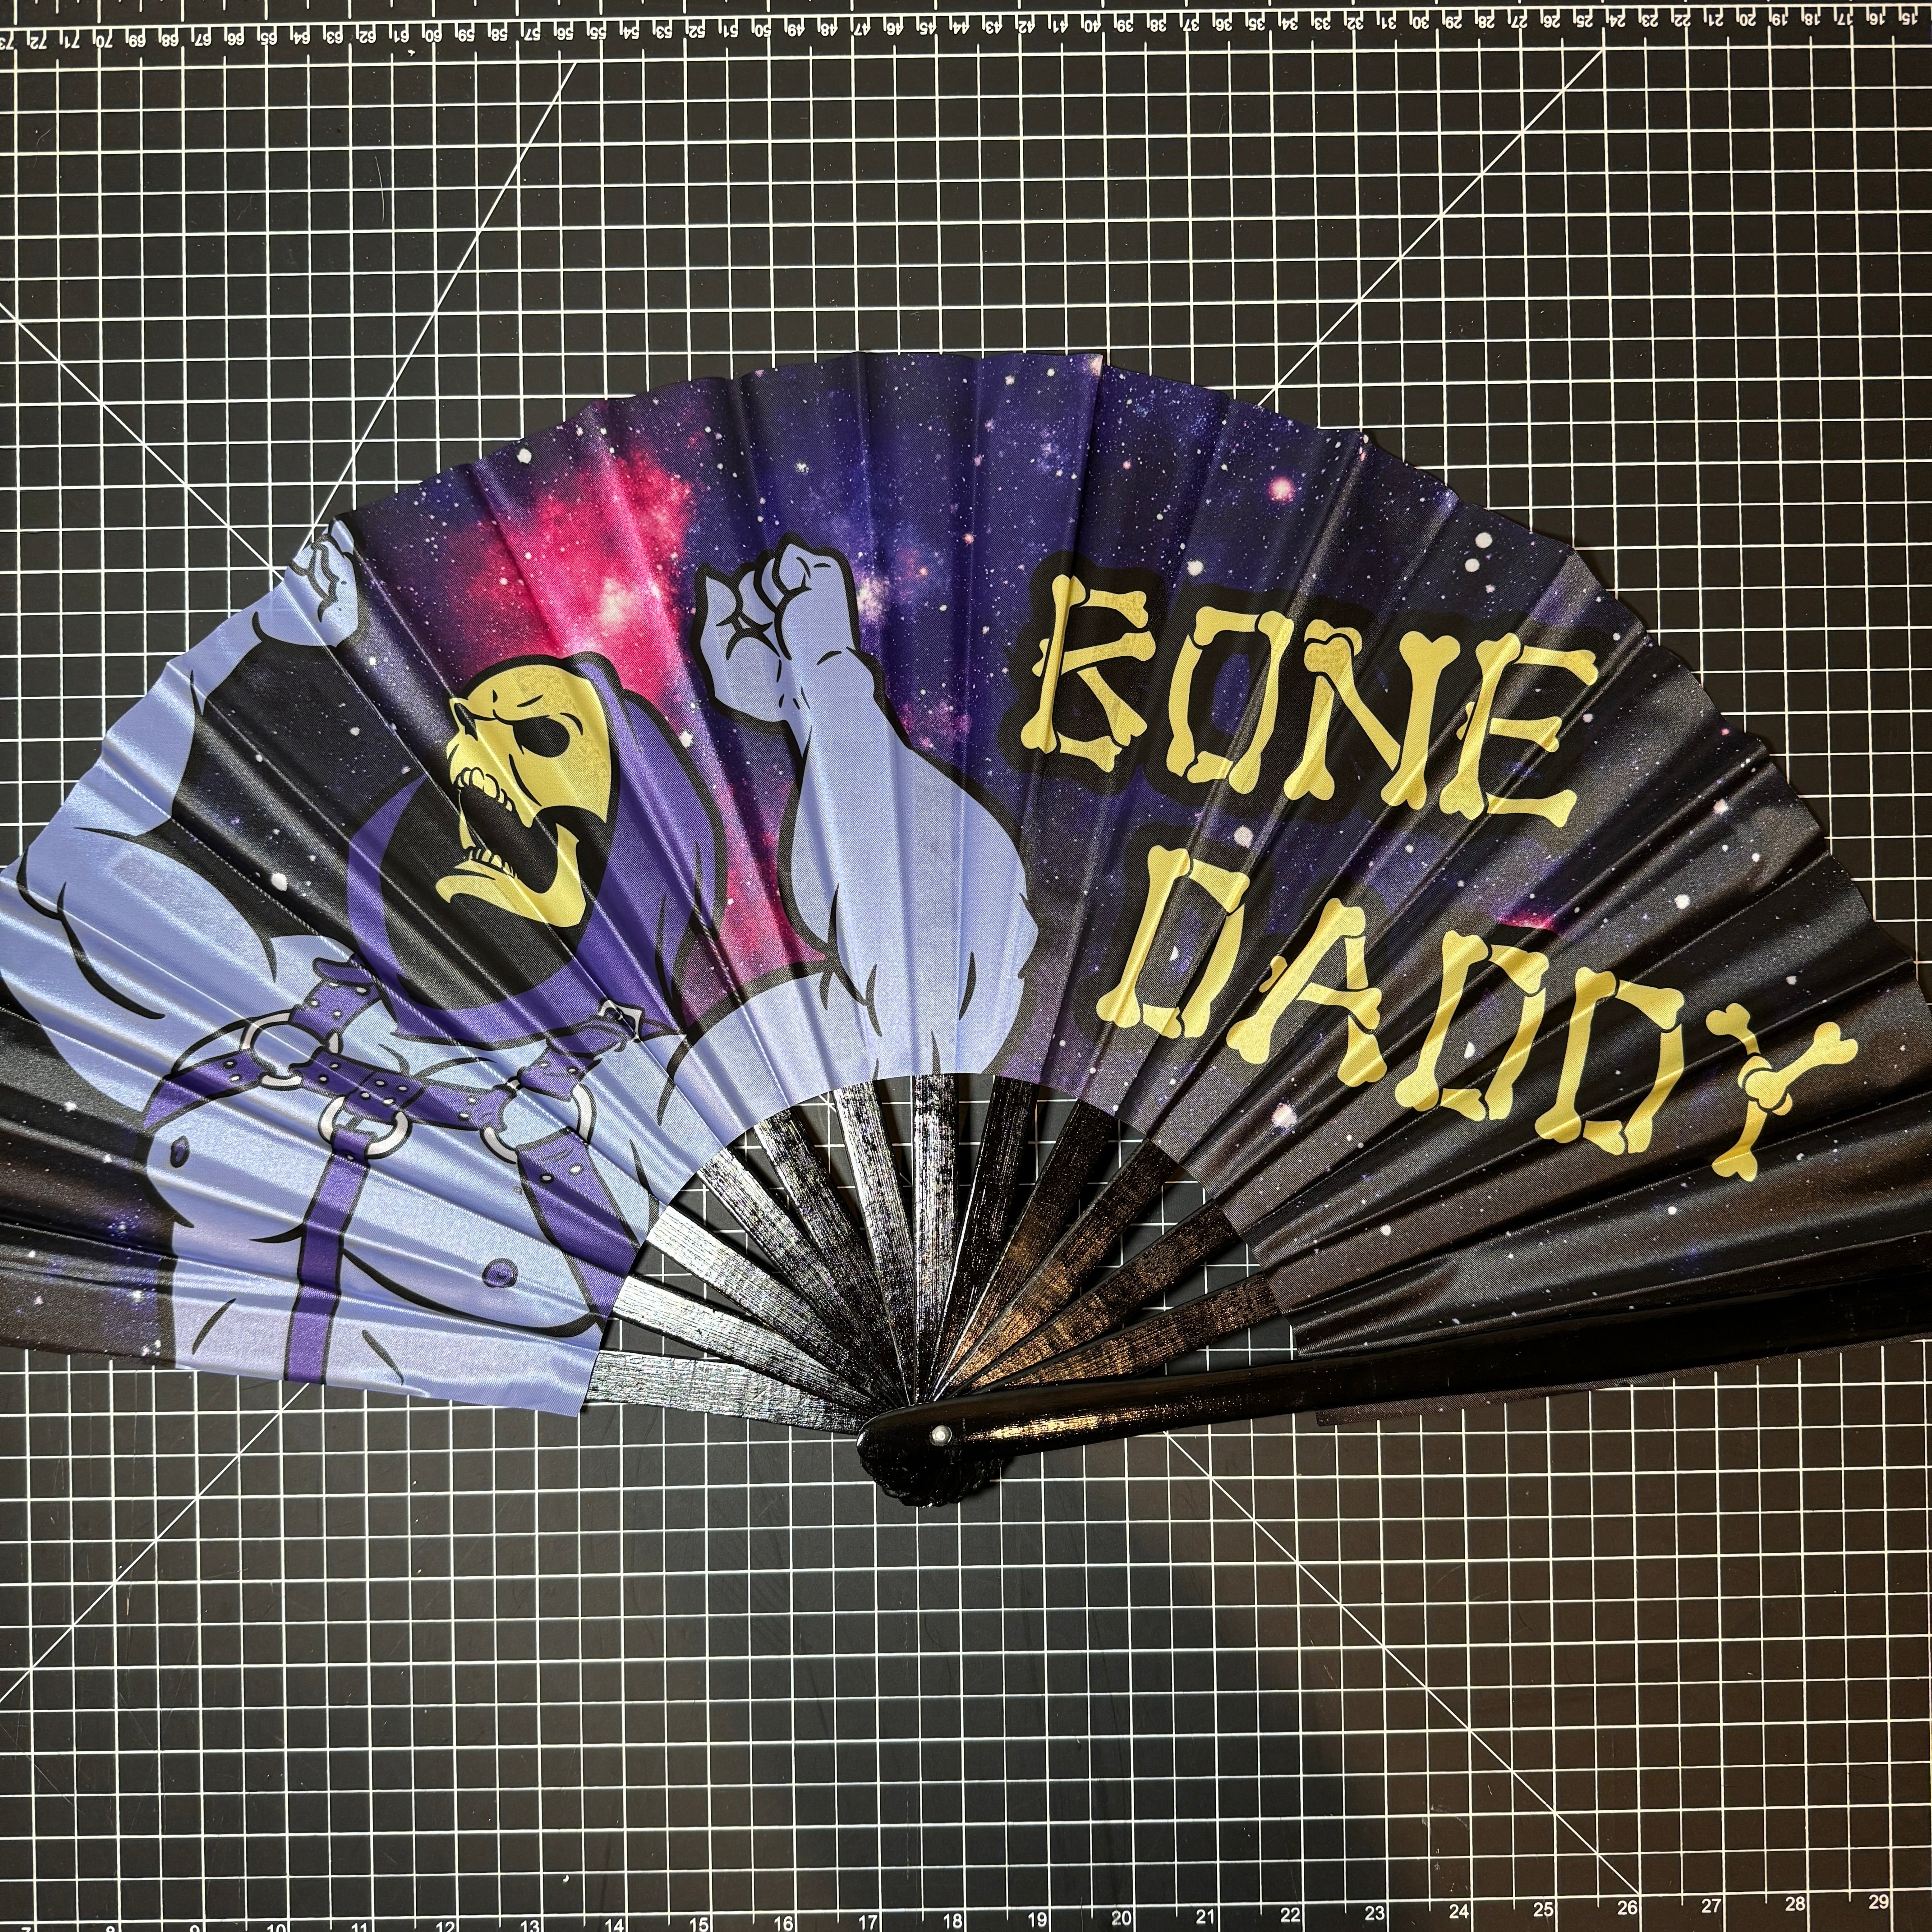 Bone Daddy Fan